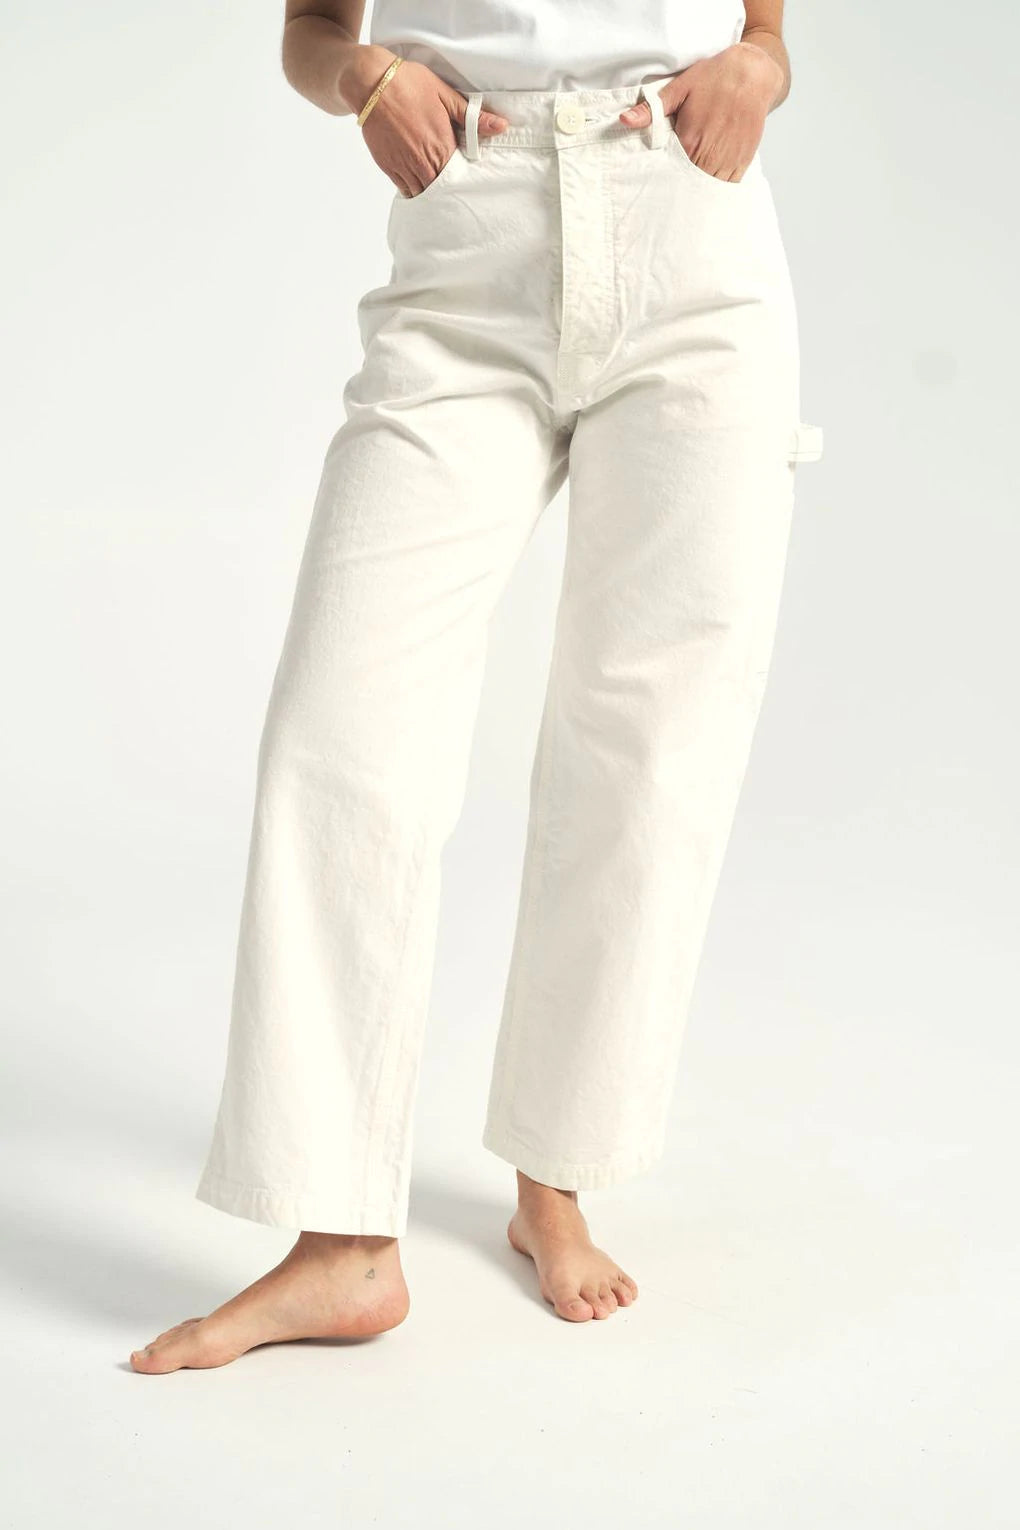 Jesse Kamm-Jesse Kamm Handy Pant-Jesse Kamm white pants-white handy pants Kamm-salt handy pants Kamm-Idun-St. Paul